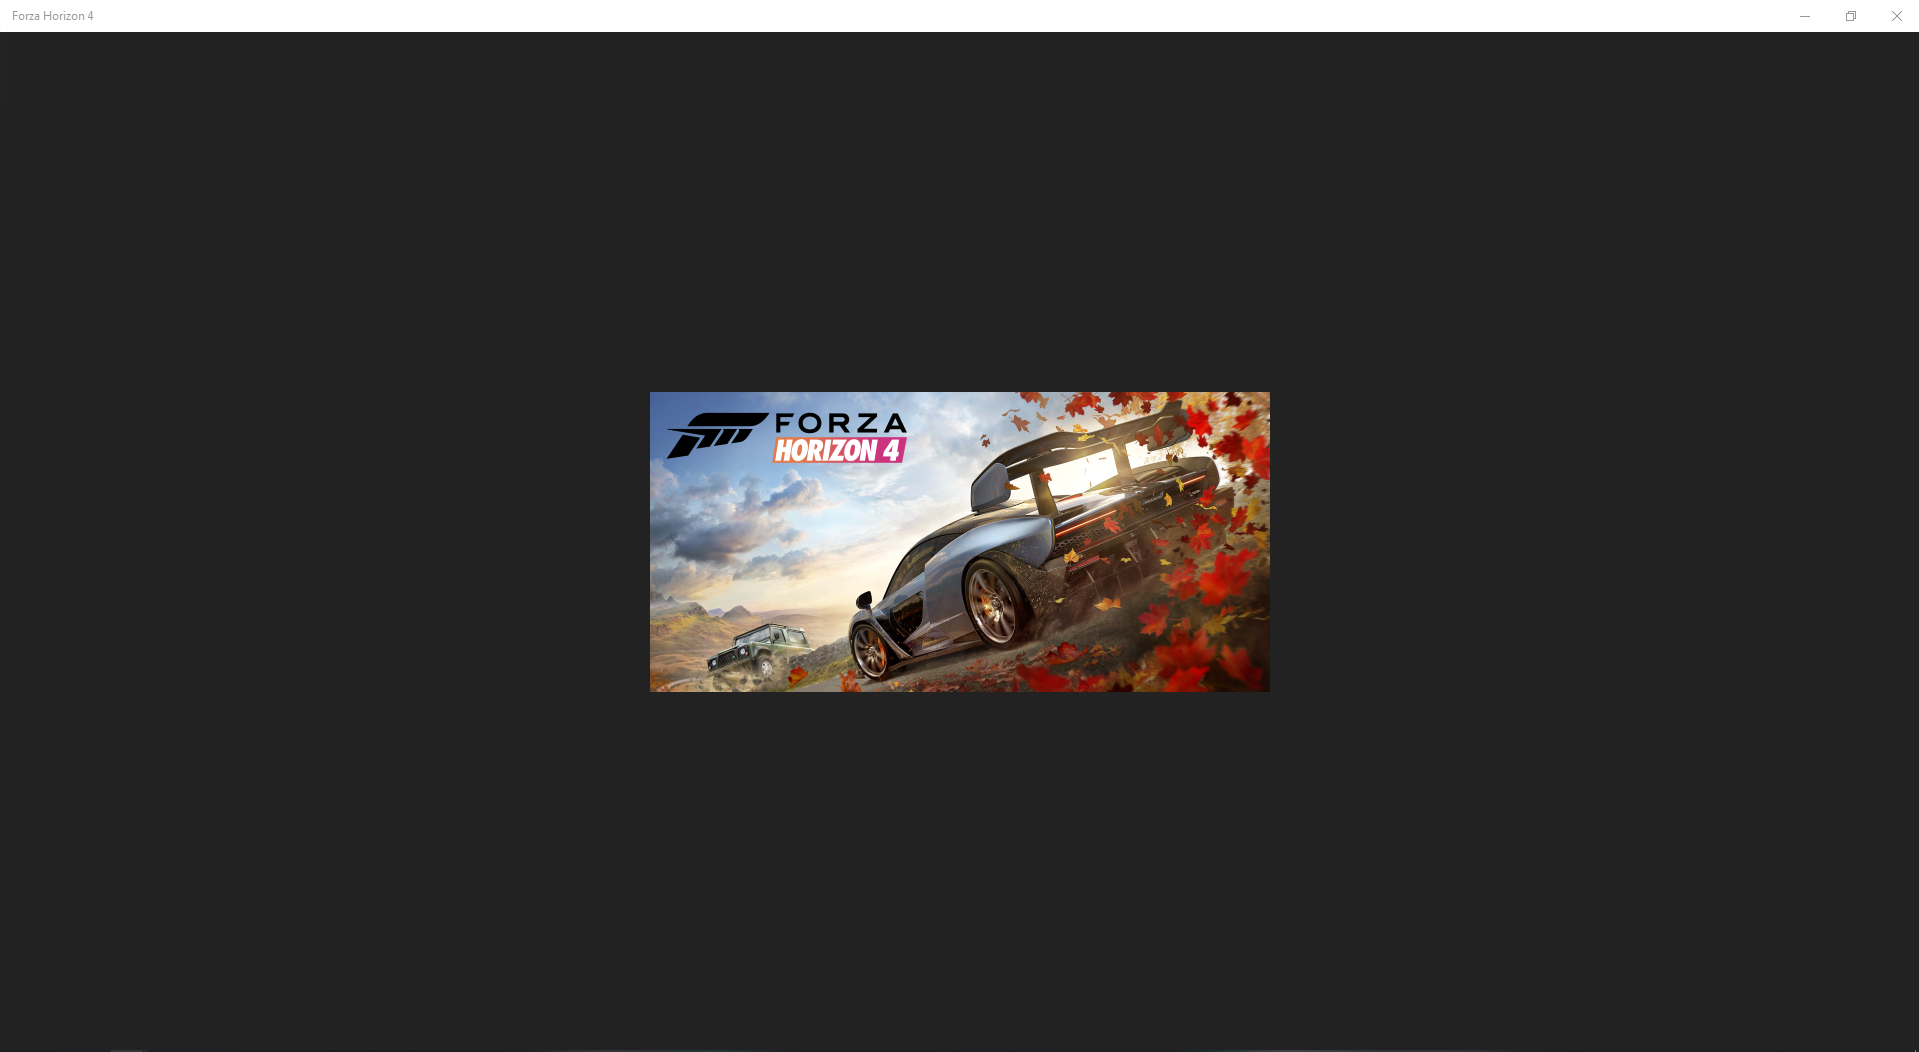 Forza Horizon 4 not working, despite multiple reinstalls/resets 8fc70a60-45f1-4dc8-90de-d58a476682f7?upload=true.png